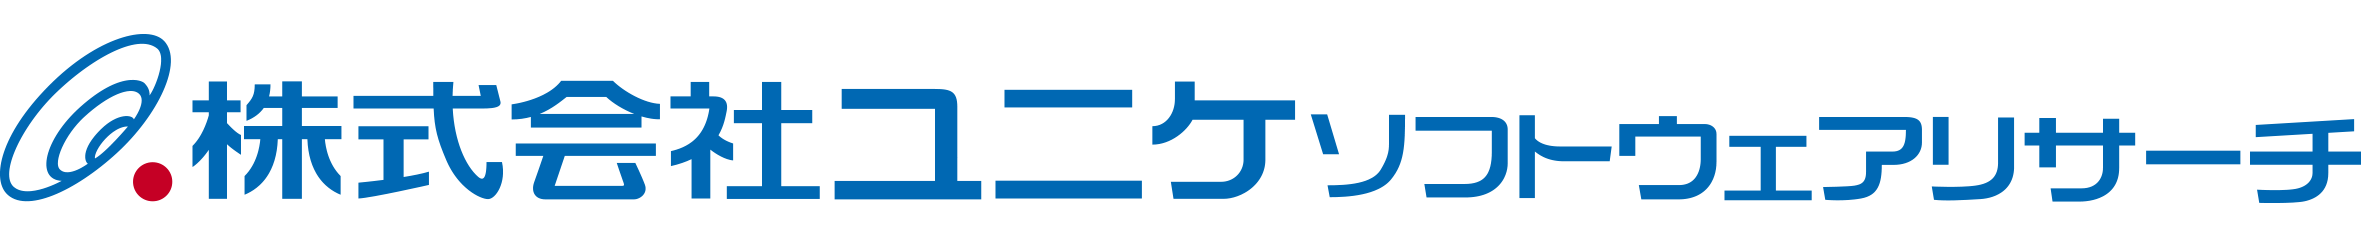 株式会社ユニケソフトウェアリサーチ ロゴ